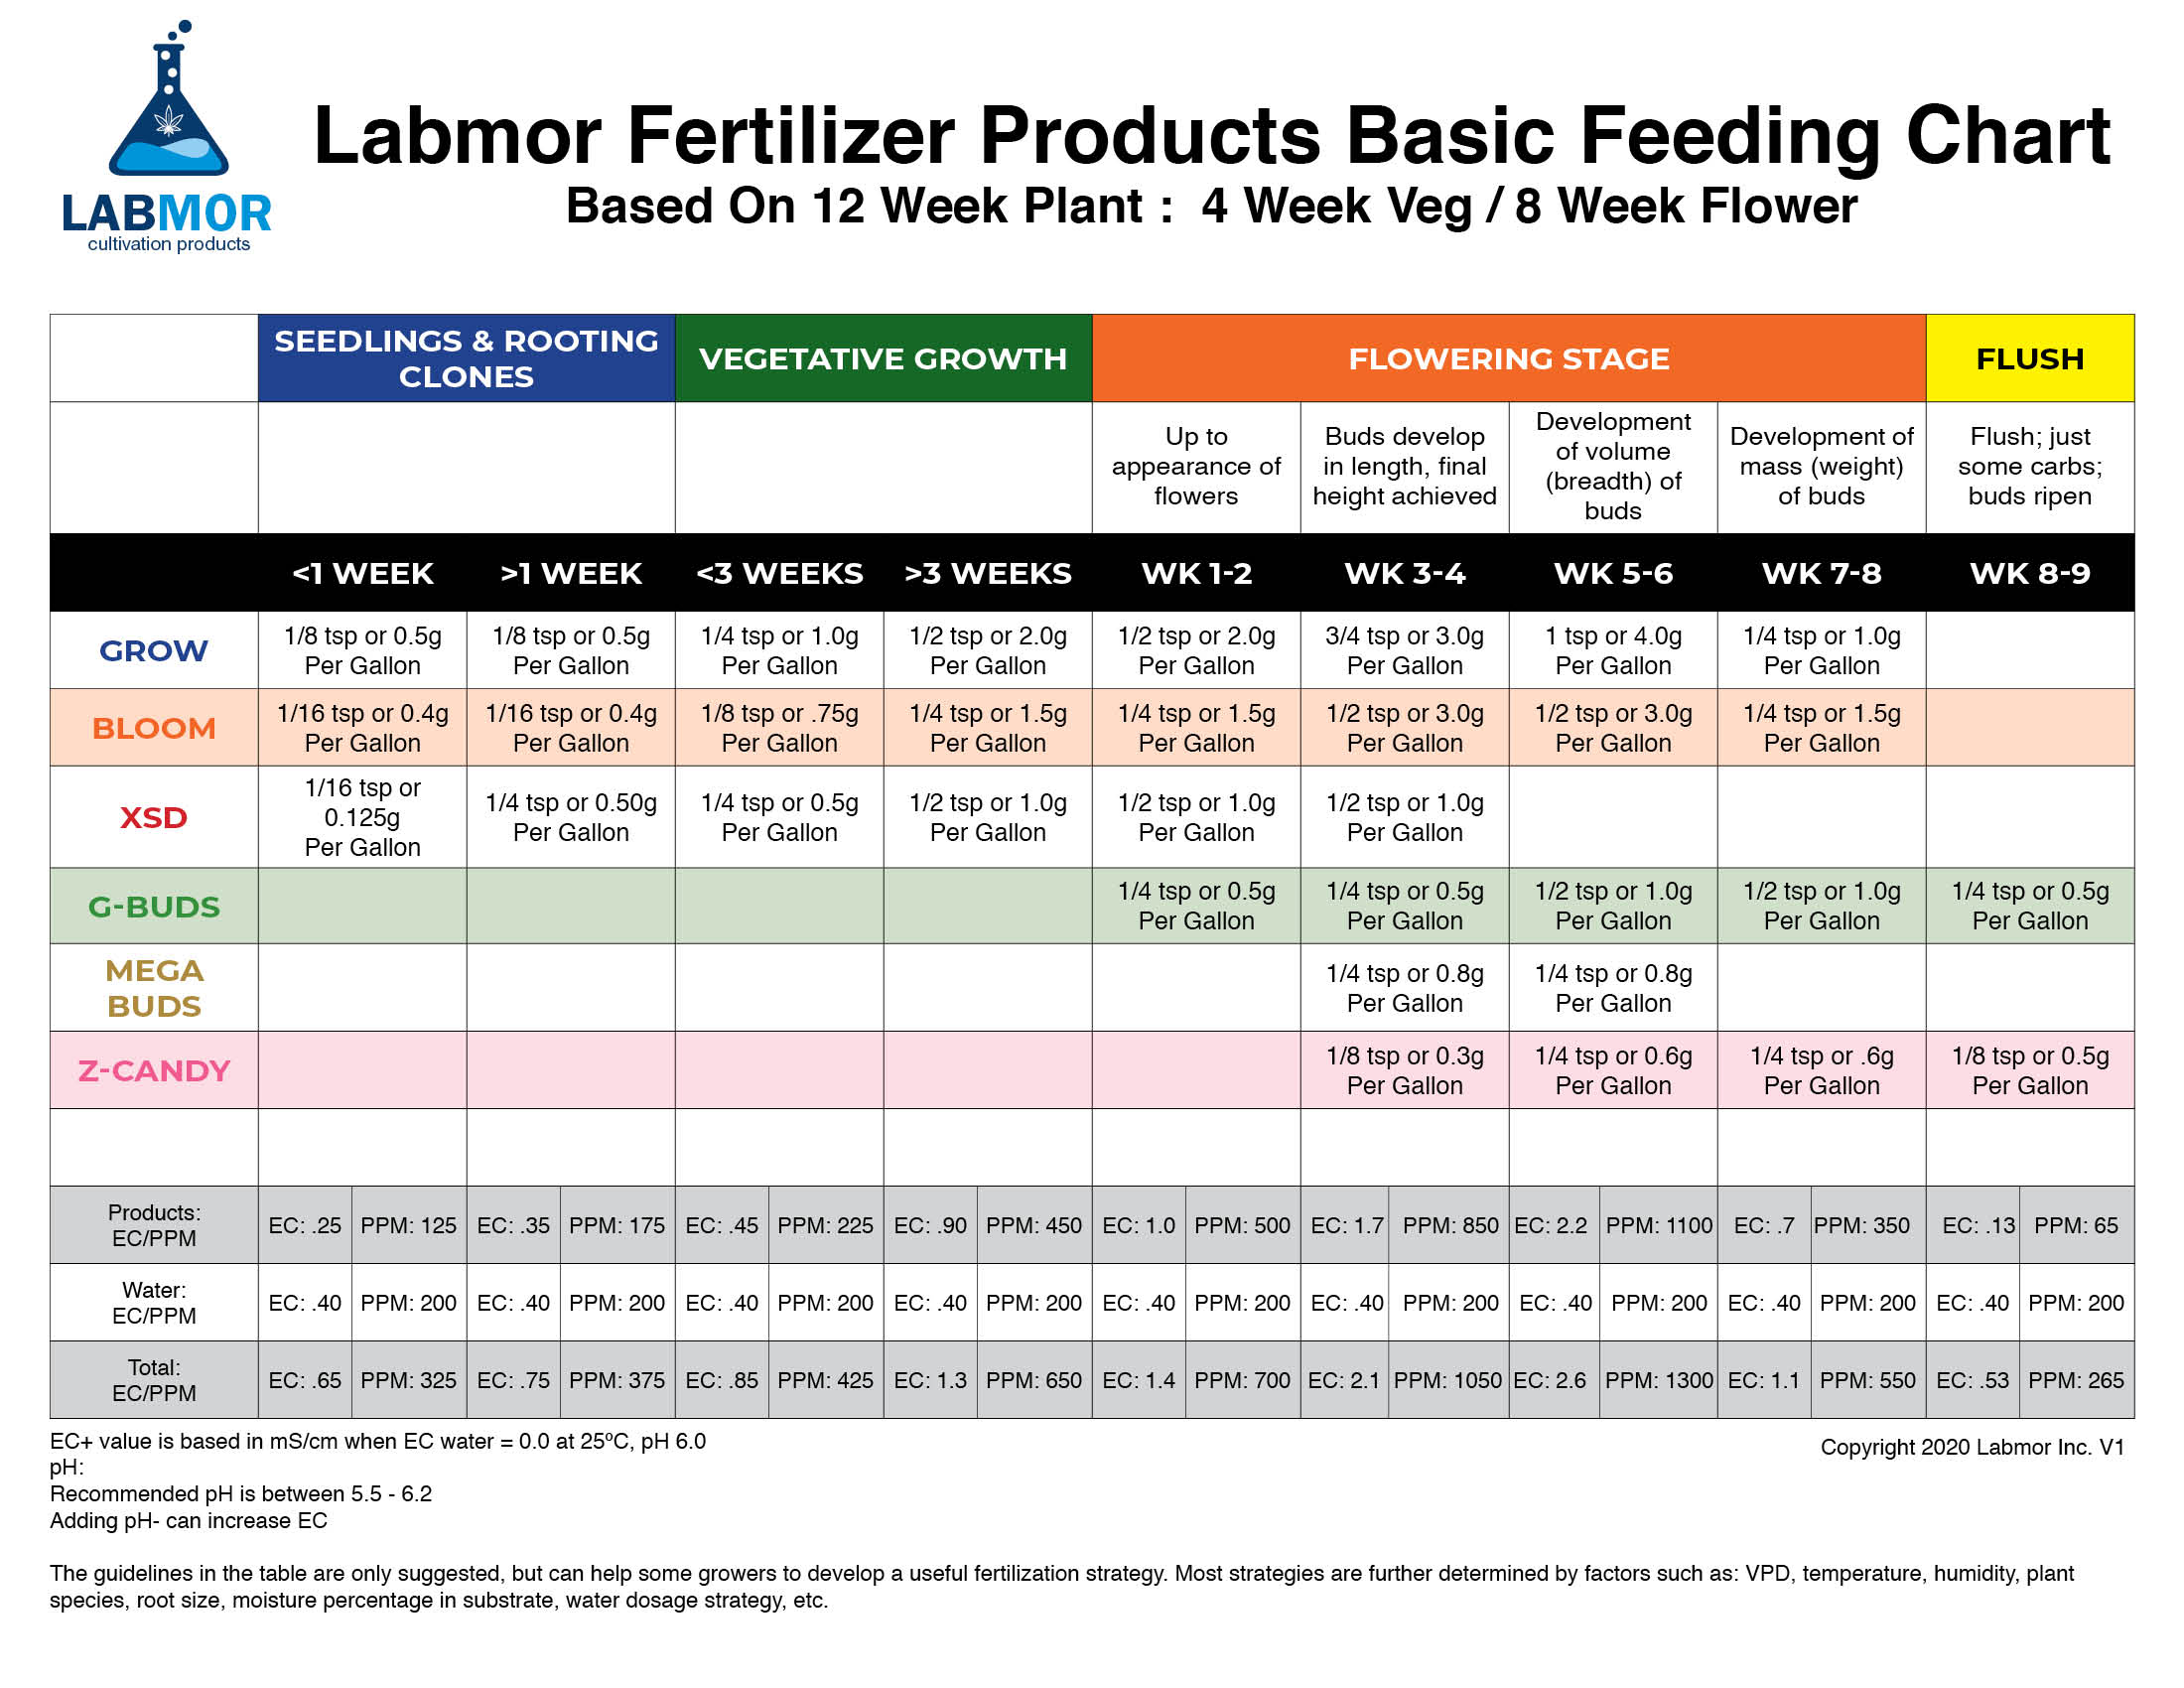 Labmor Feeding Chart